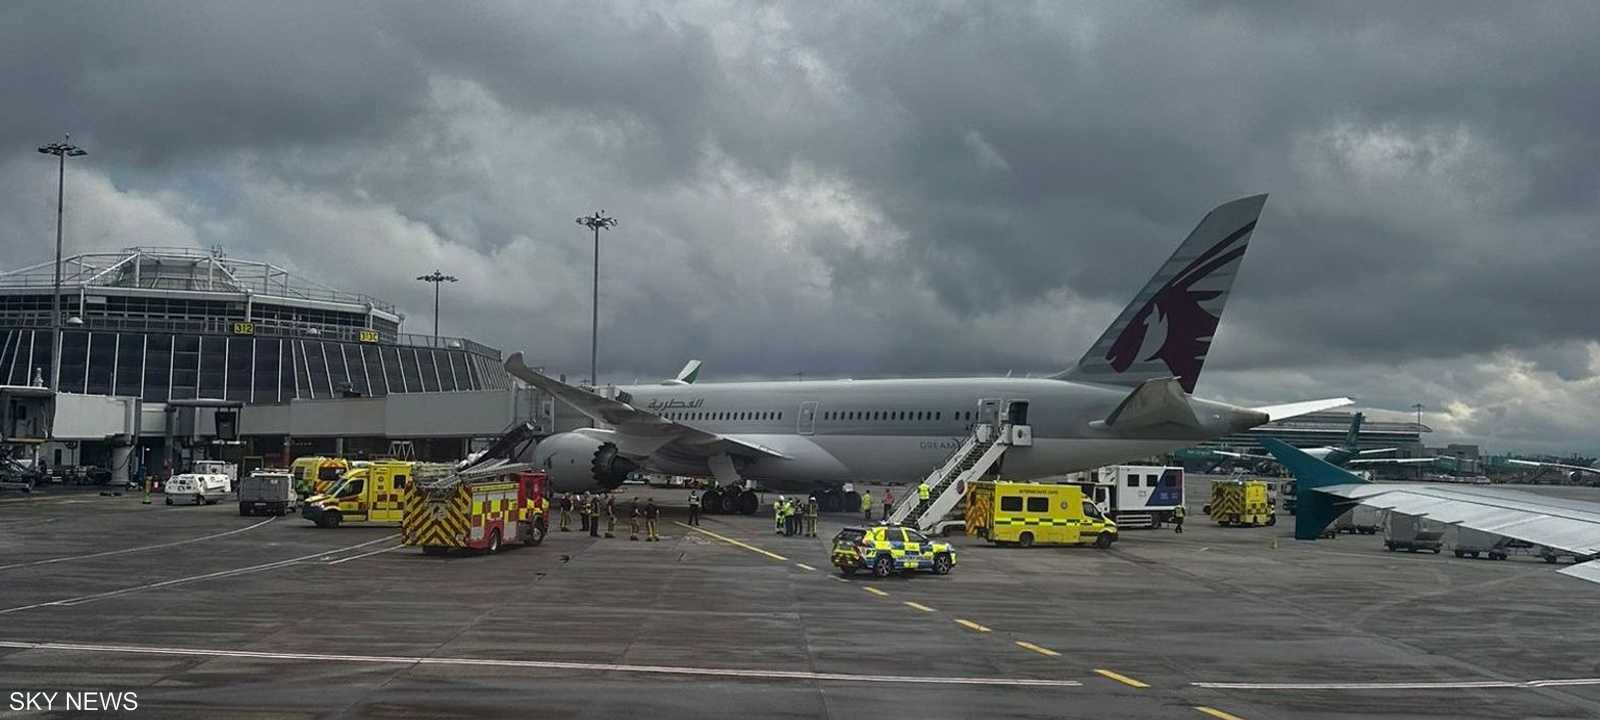 هبطت الطائرة بسلام في مطار دبلن